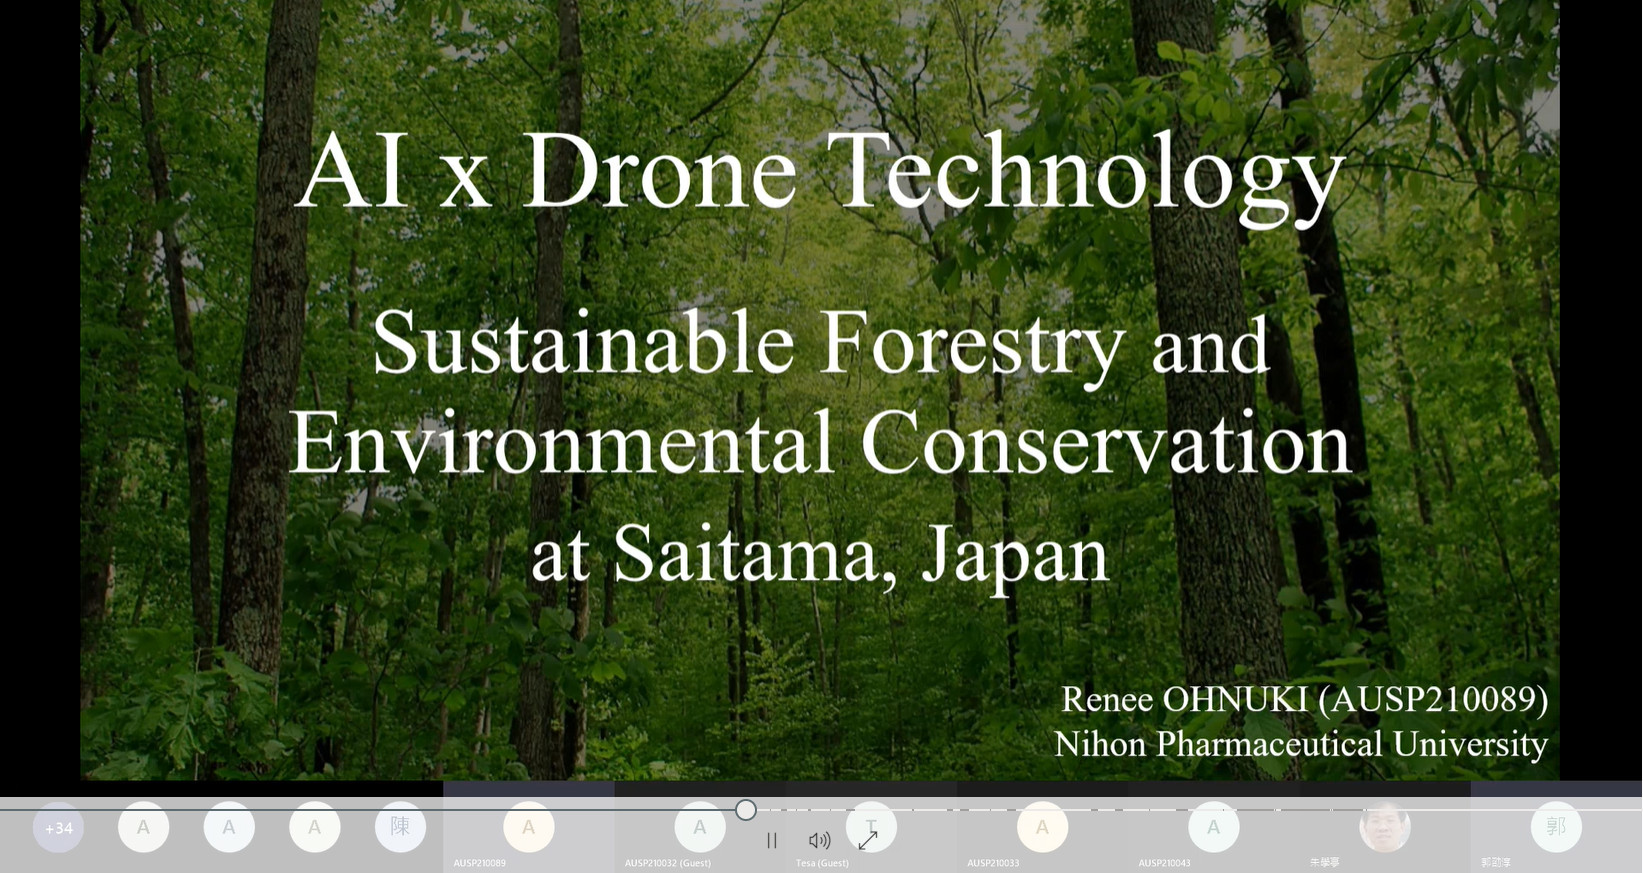 來自日本的Renee Ohnuki學生，以AI和無人機術結合應用在林業和環境保護為題，進行期末報告，得到評審老師一致好評。